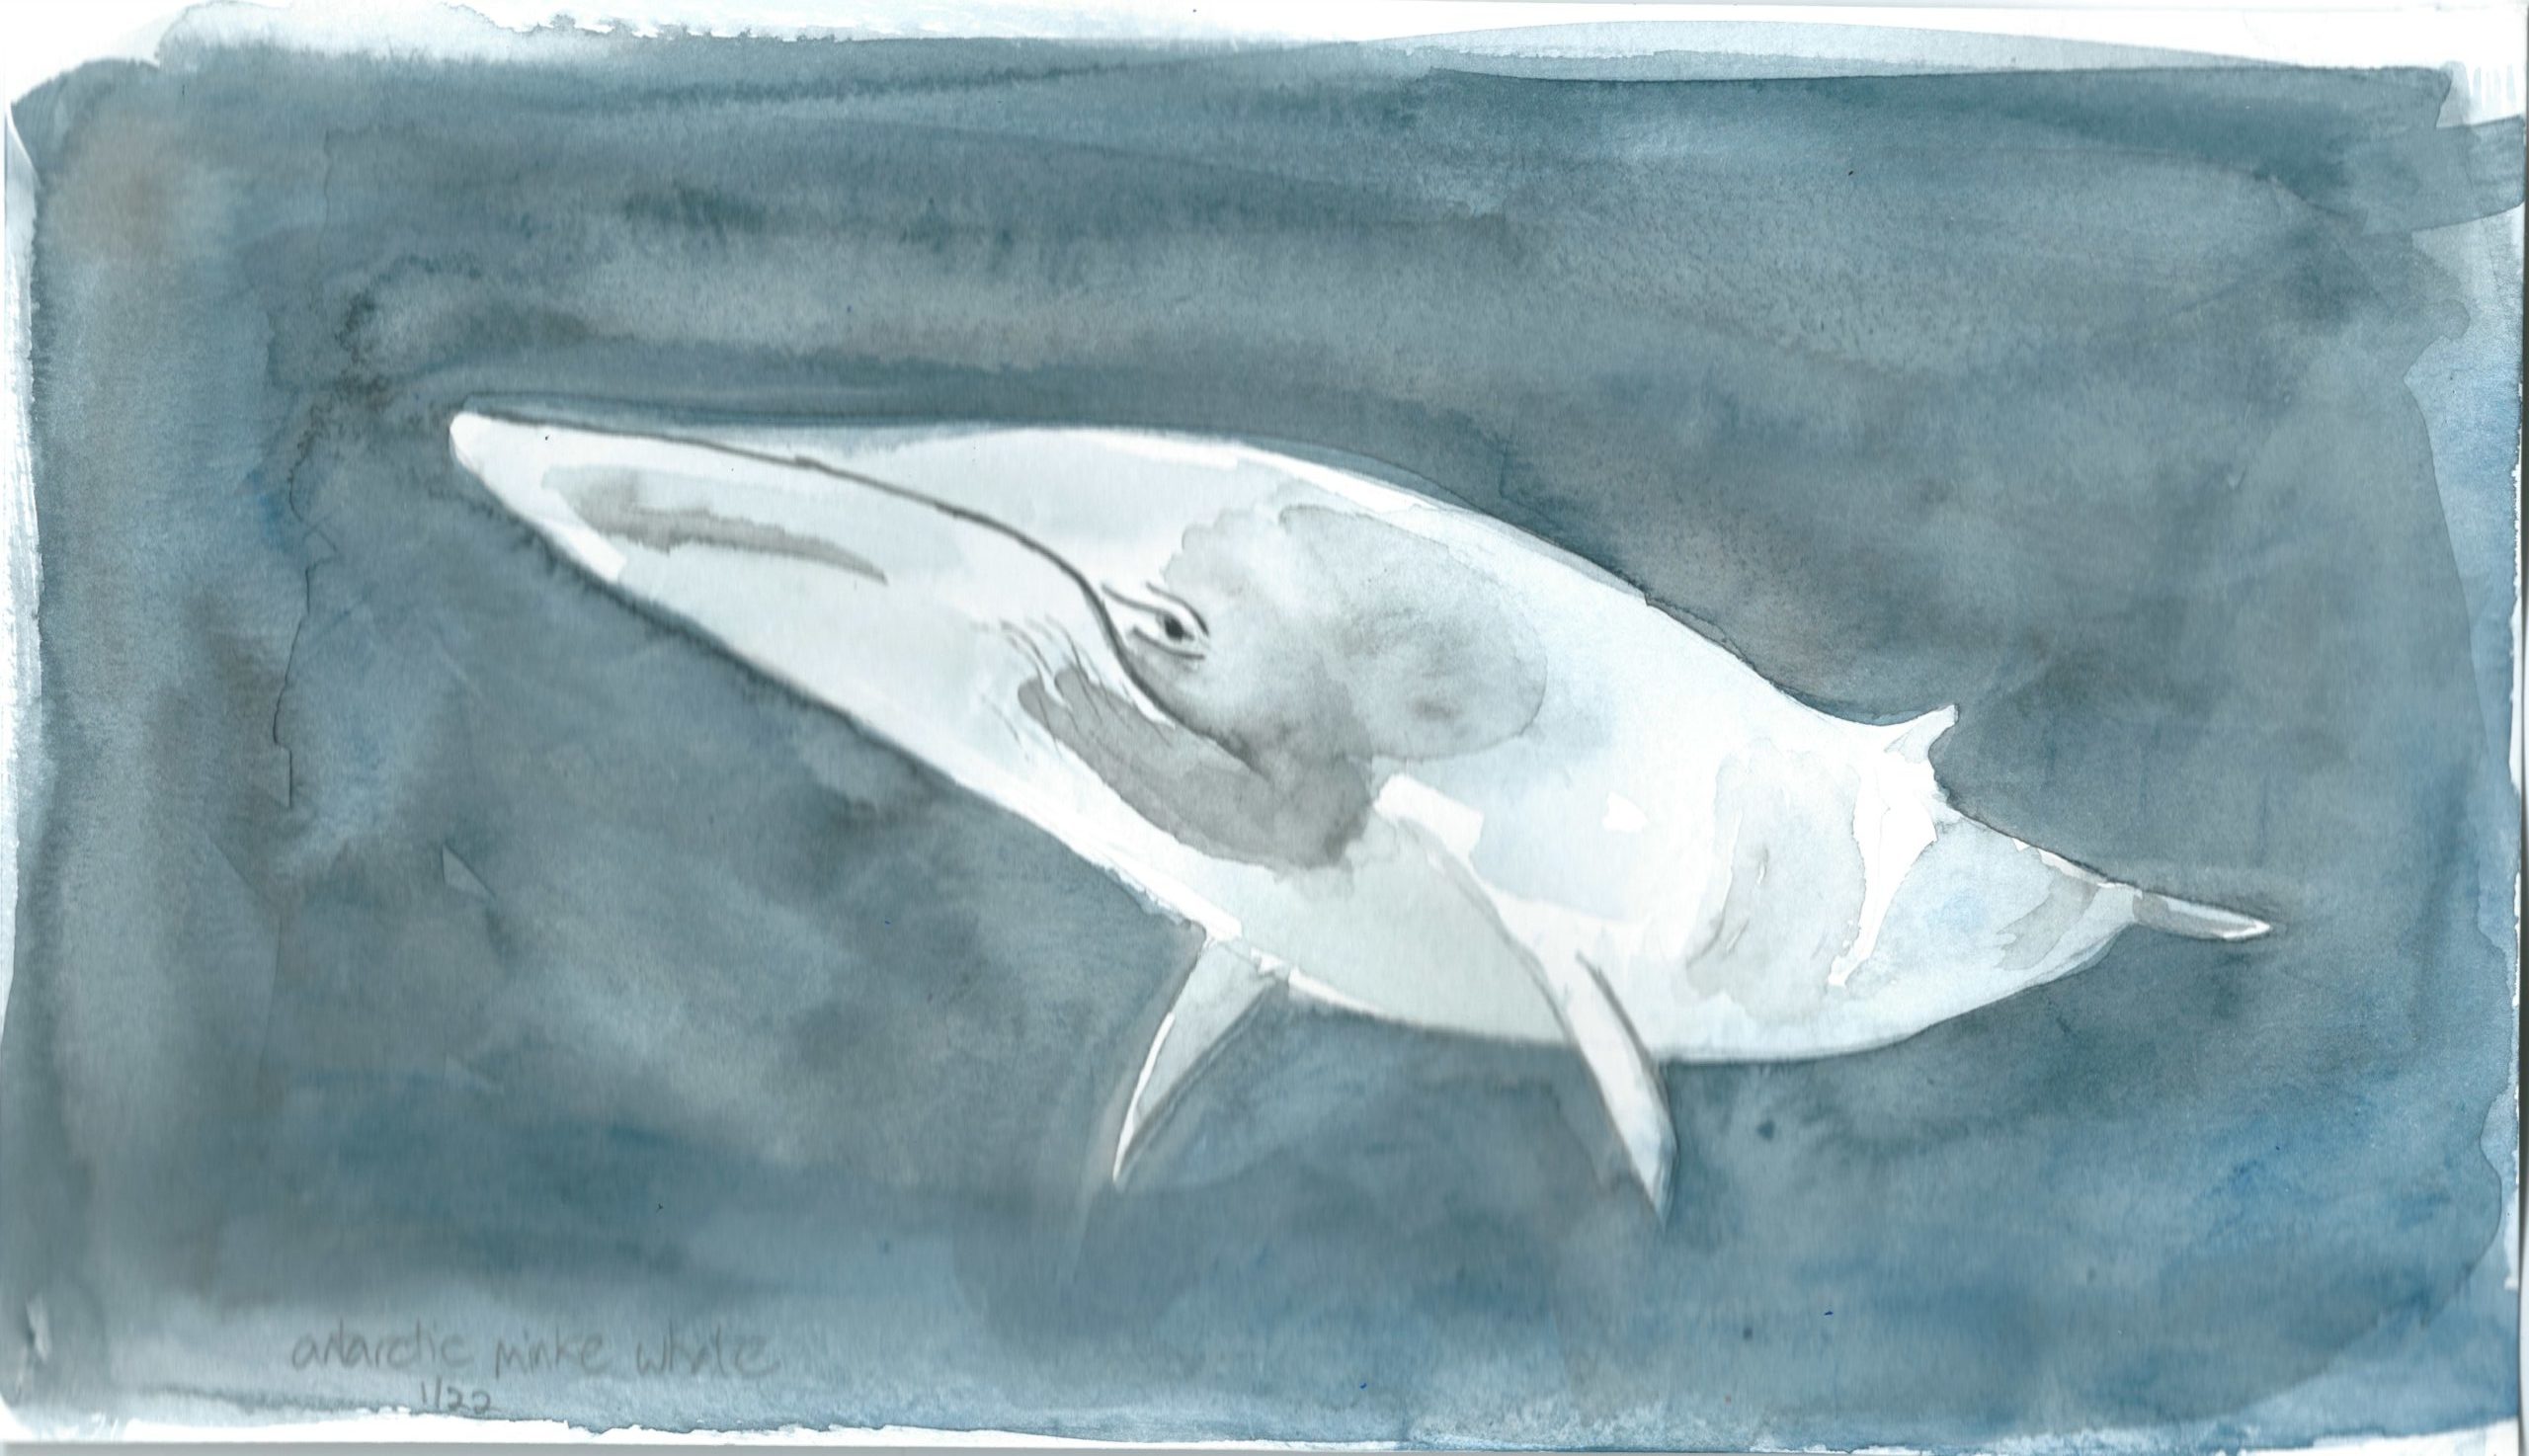 Minke whale in watercolor